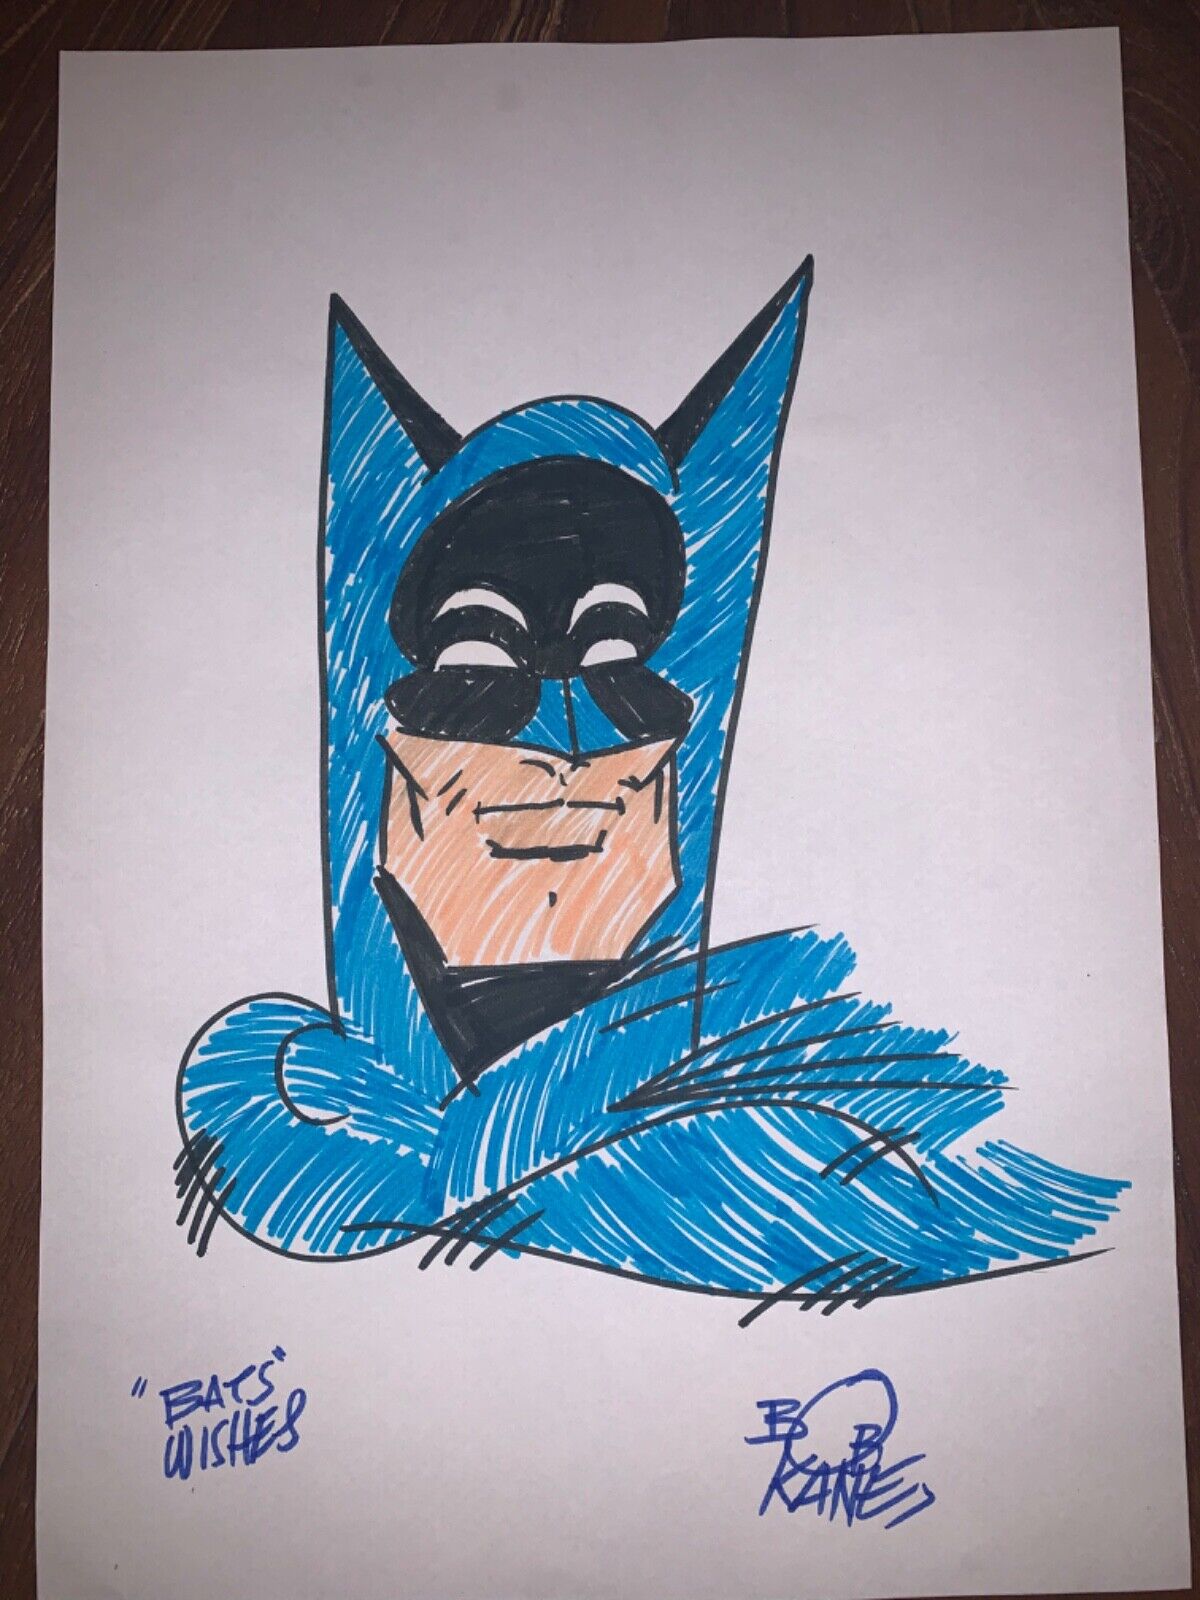 Bob Kane Vintage Signed Inscribed Batman Sketch “Bat Wishes” DC Comics